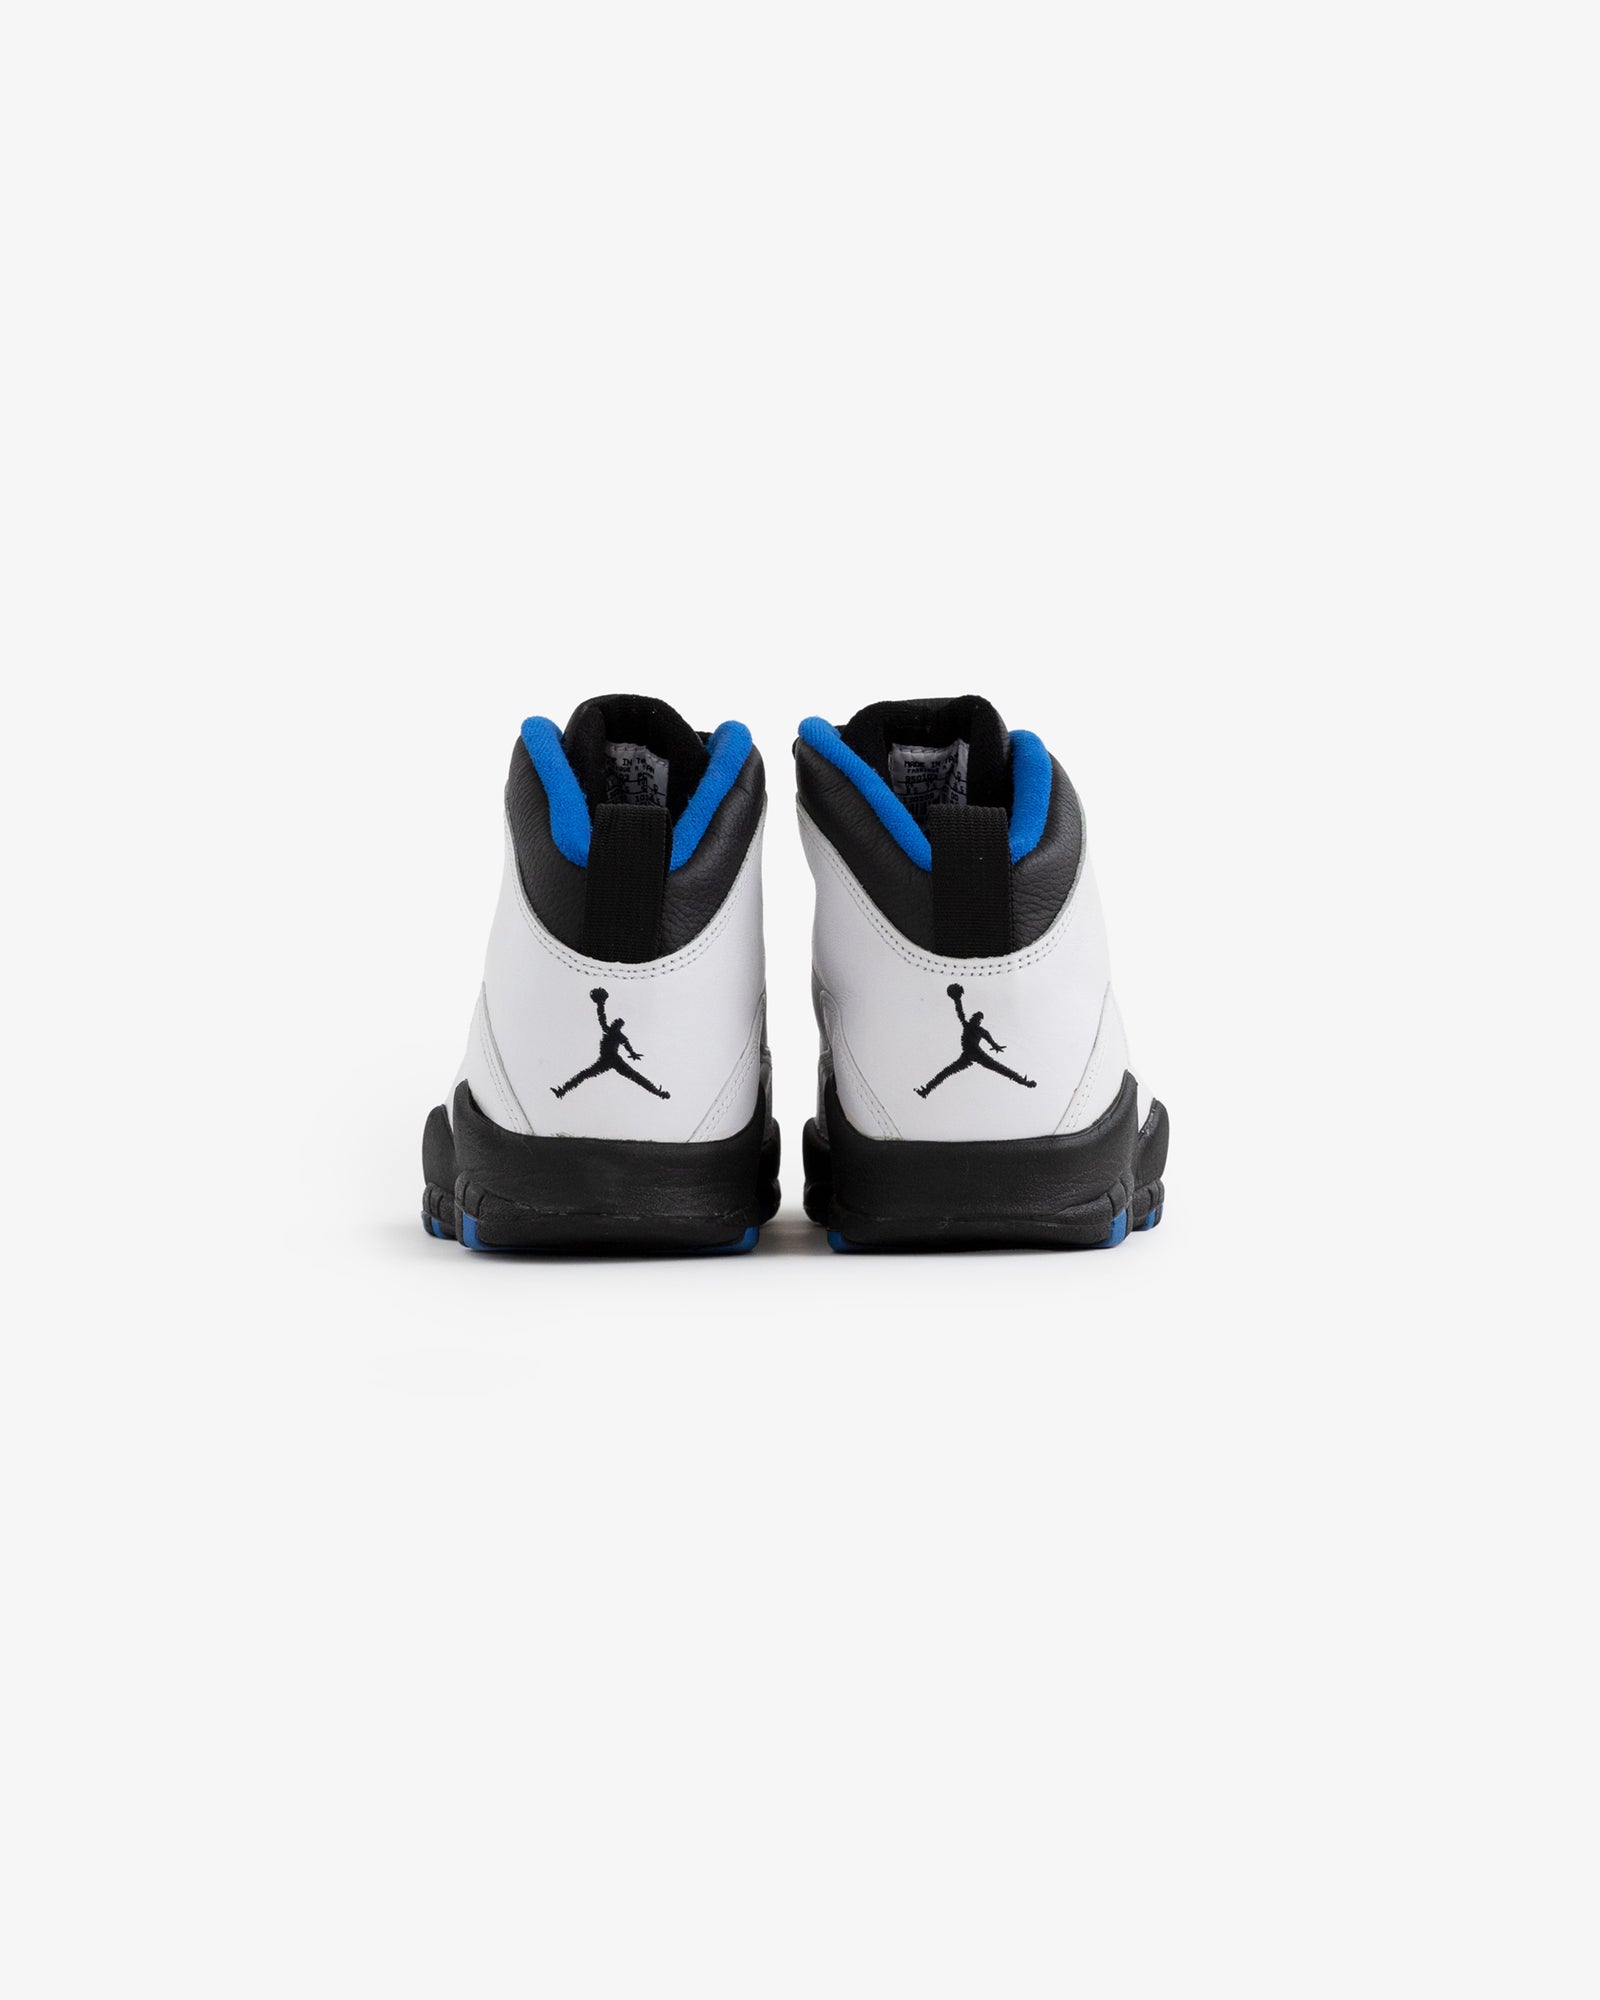 OG 1995 Nike Air Jordan X 'New York Knicks' – Aimé Leon Dore